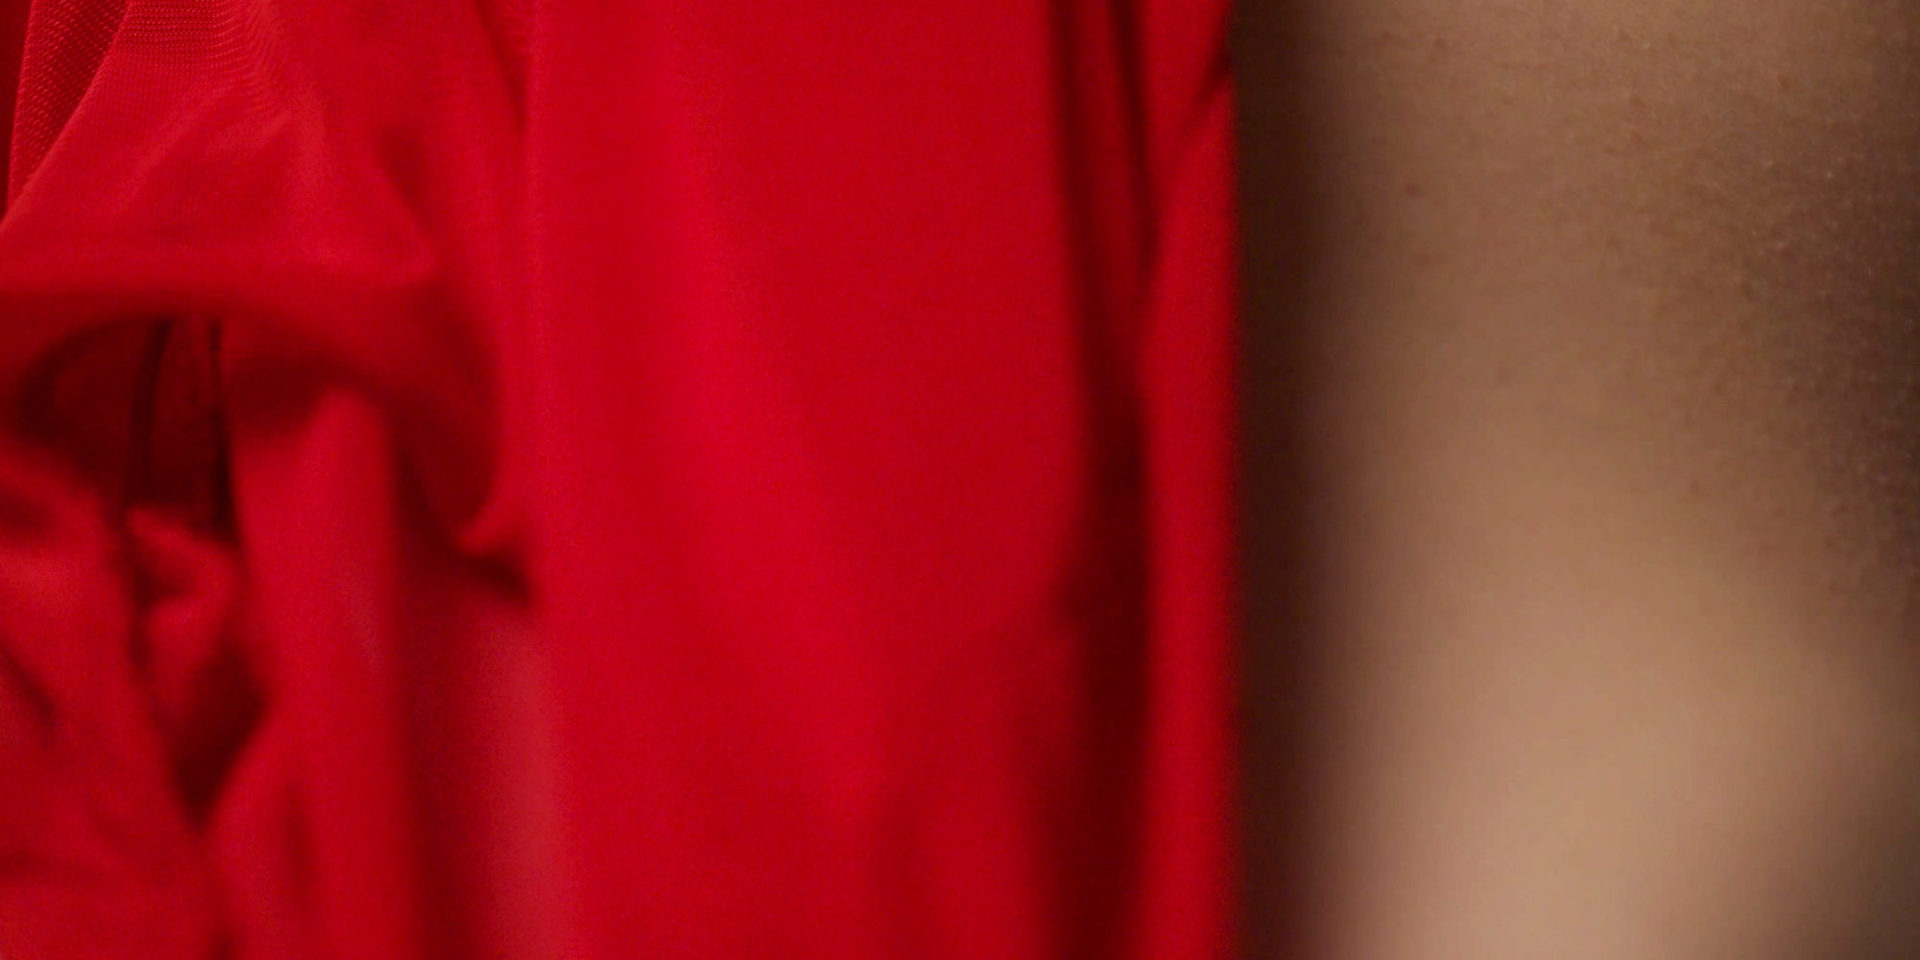 Zdjęcie macro 100mm, część czerwonej sukienki nocnej na kobiecej skórze z ciarkami. buduar